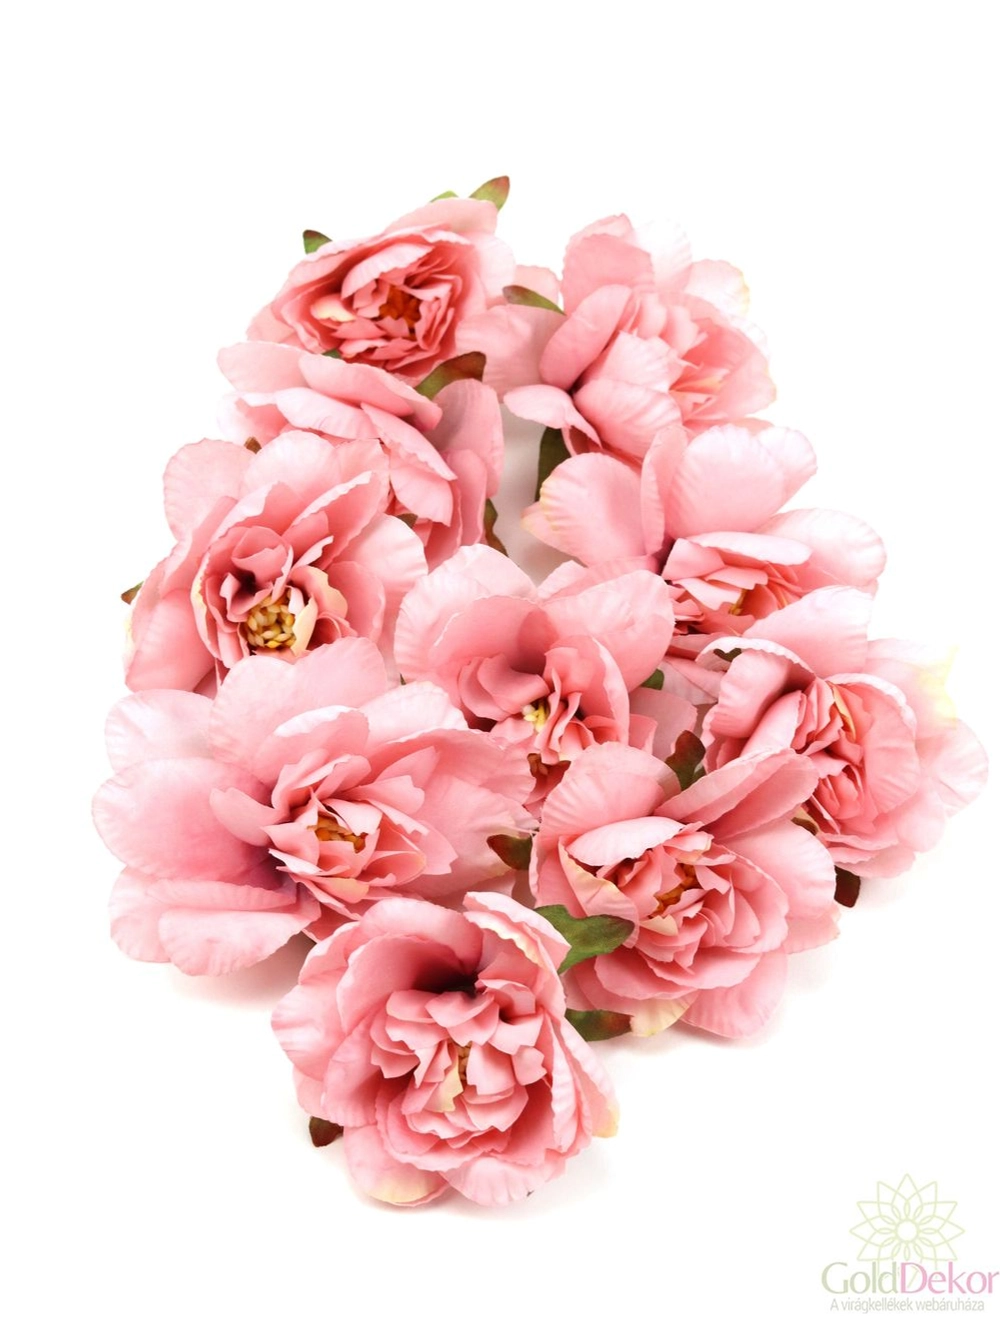 Dekor fejvirág 4 - Fáradt rózsaszín